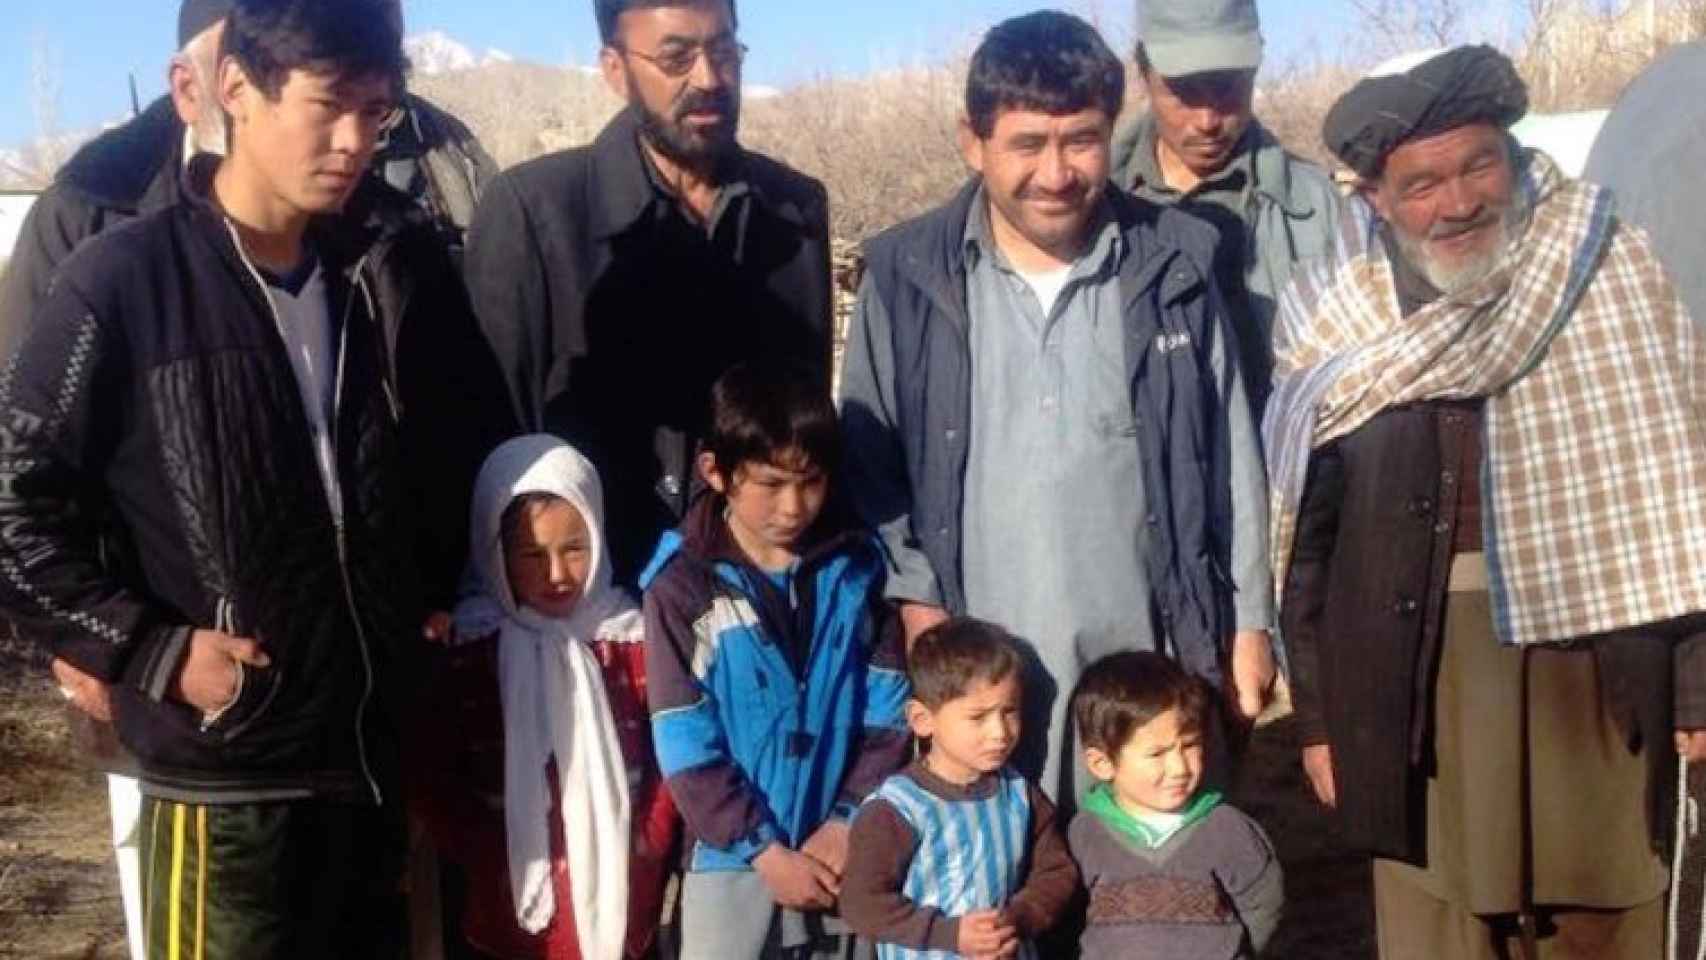 La familia Ahmadi y sus vecinos en una foto subida a Facebook